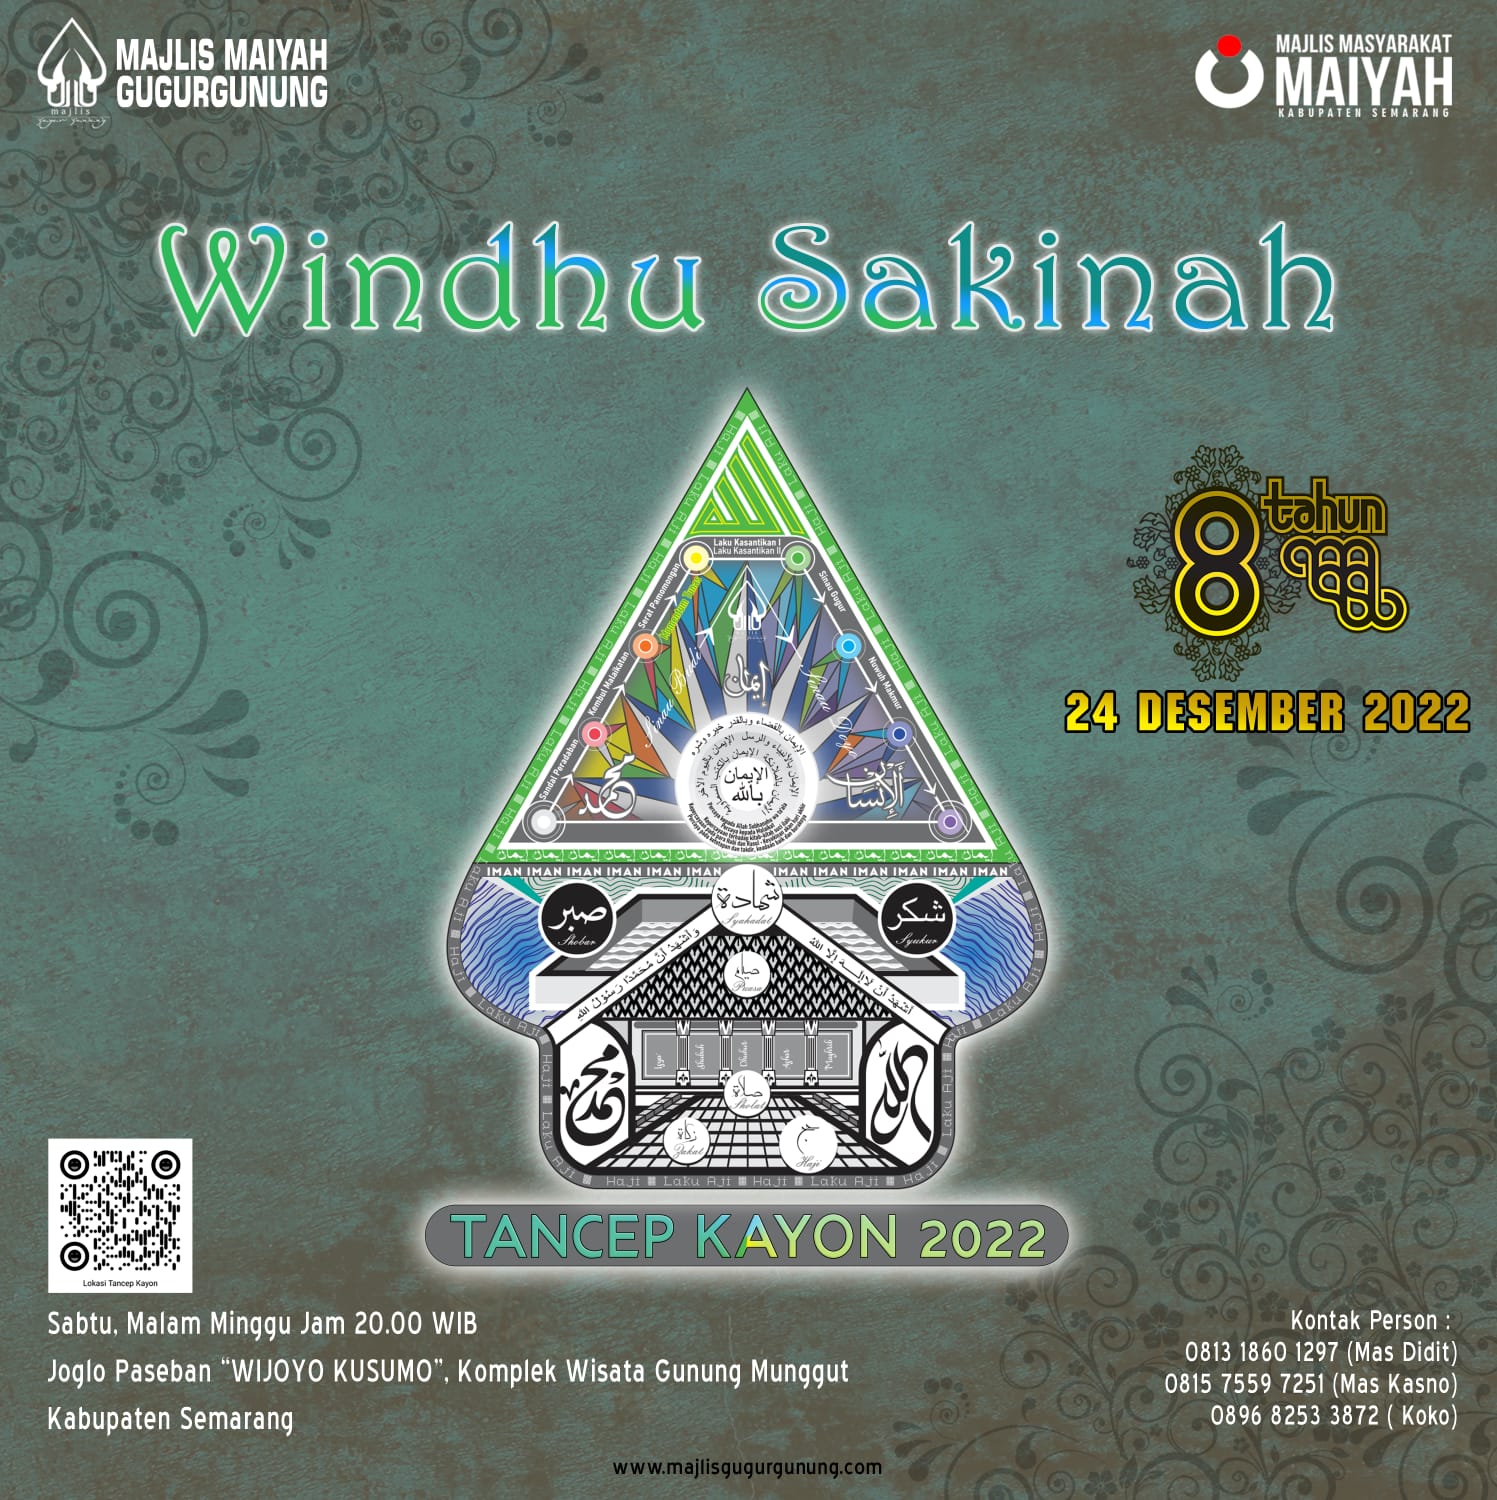 Windhu Sakinah